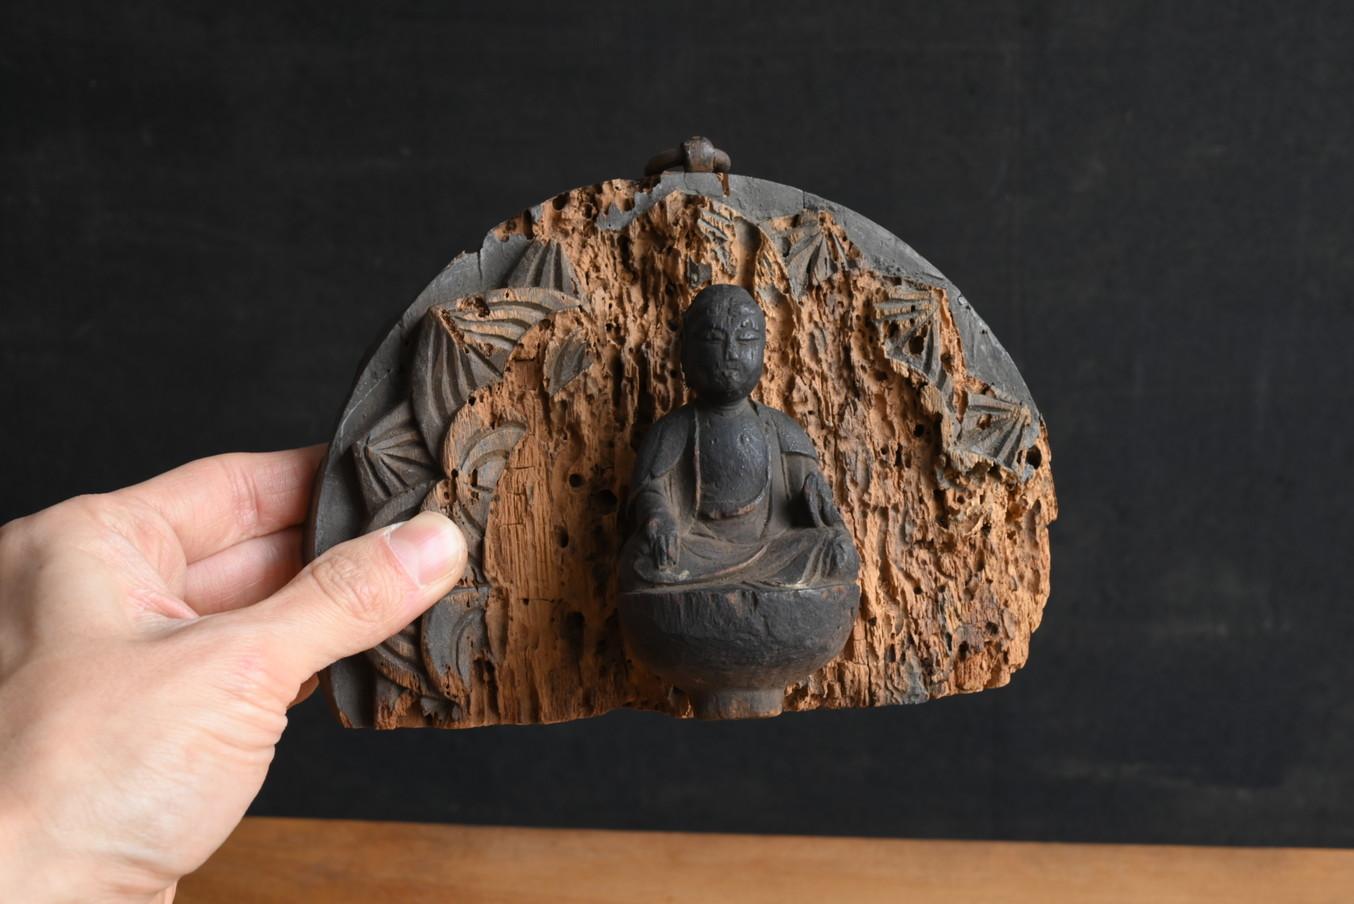 Il s'agit d'une statue de Bouddha en bois fabriquée à l'époque d'Edo au Japon.
Bien qu'il s'agisse d'une petite statue de Bouddha, elle a une forte présence et est magnifique.
À l'origine, il y avait un piédestal en bois, mais celui-ci a été perdu